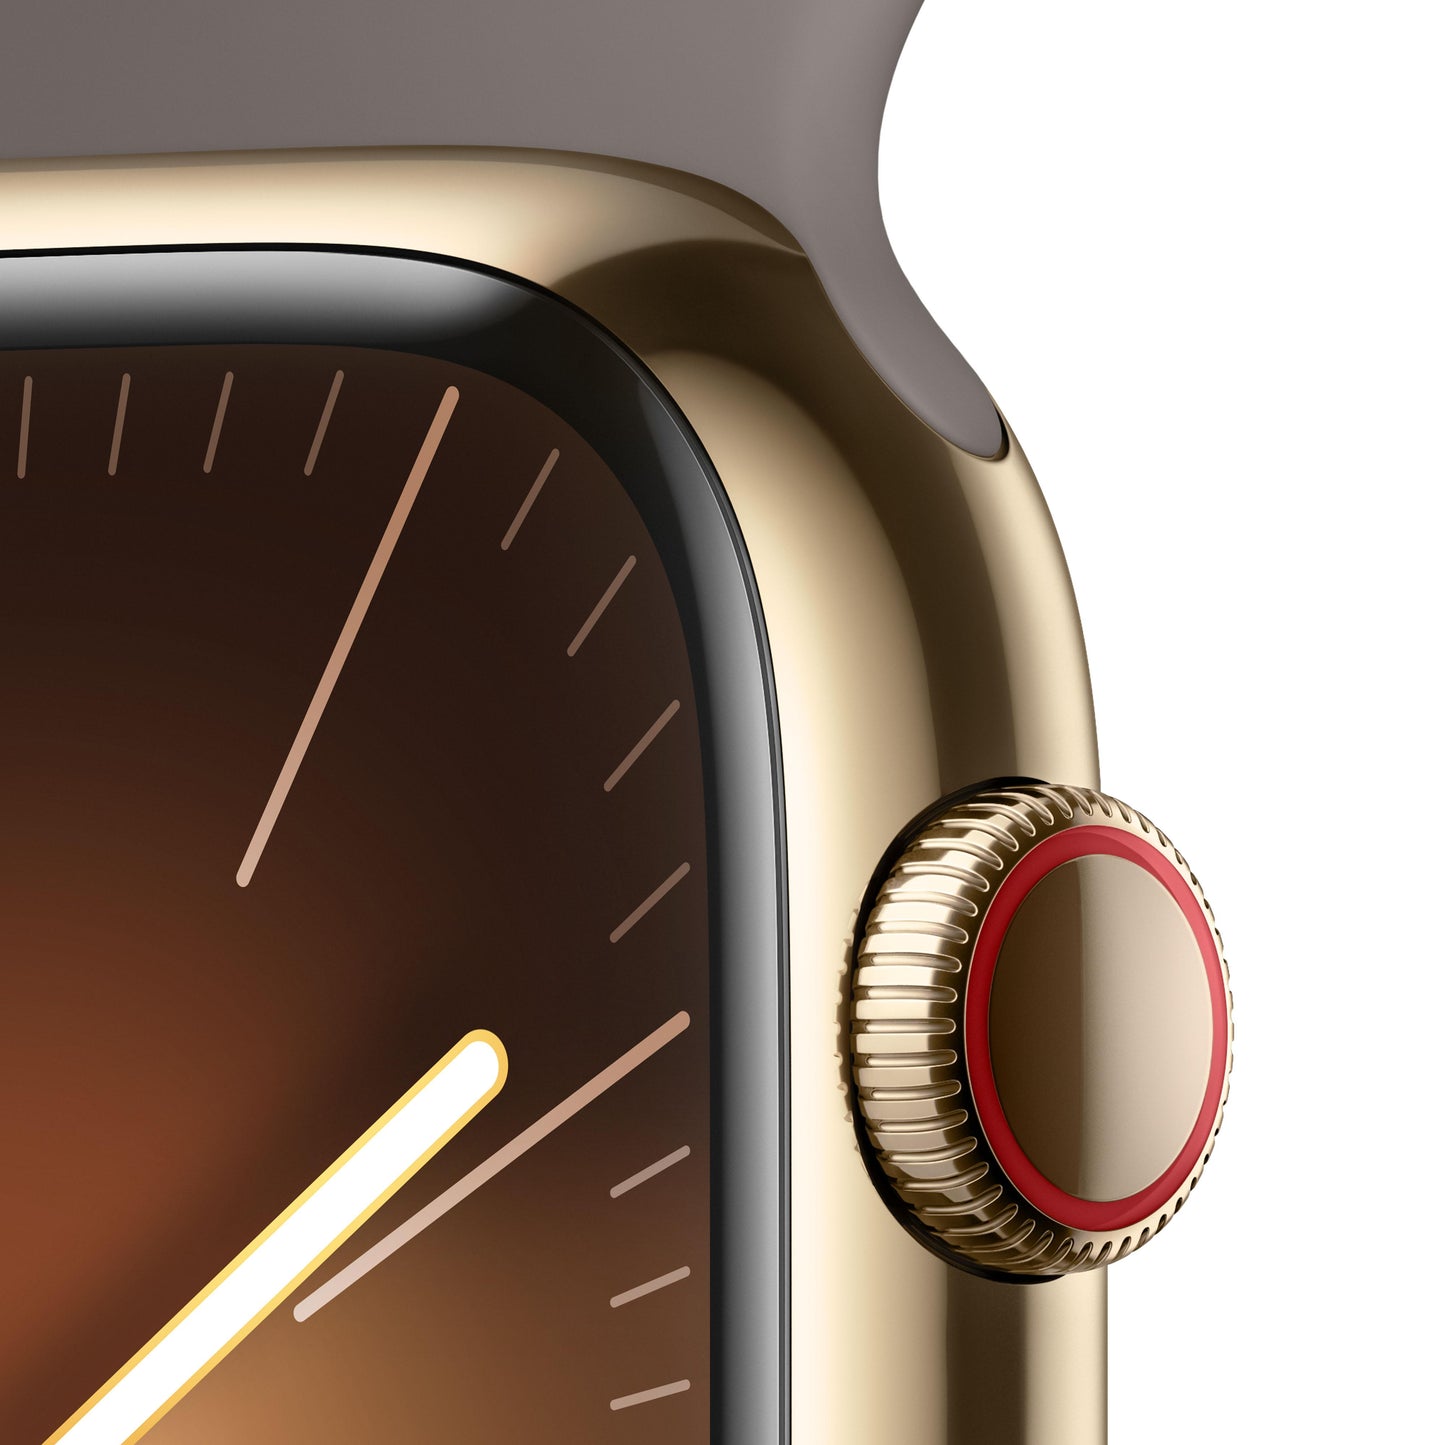 Apple Watch Series 9 (GPS + Cellular) - Caja de acero inoxidable en oro de 45 mm - Correa deportiva color arcilla - Talla S/M